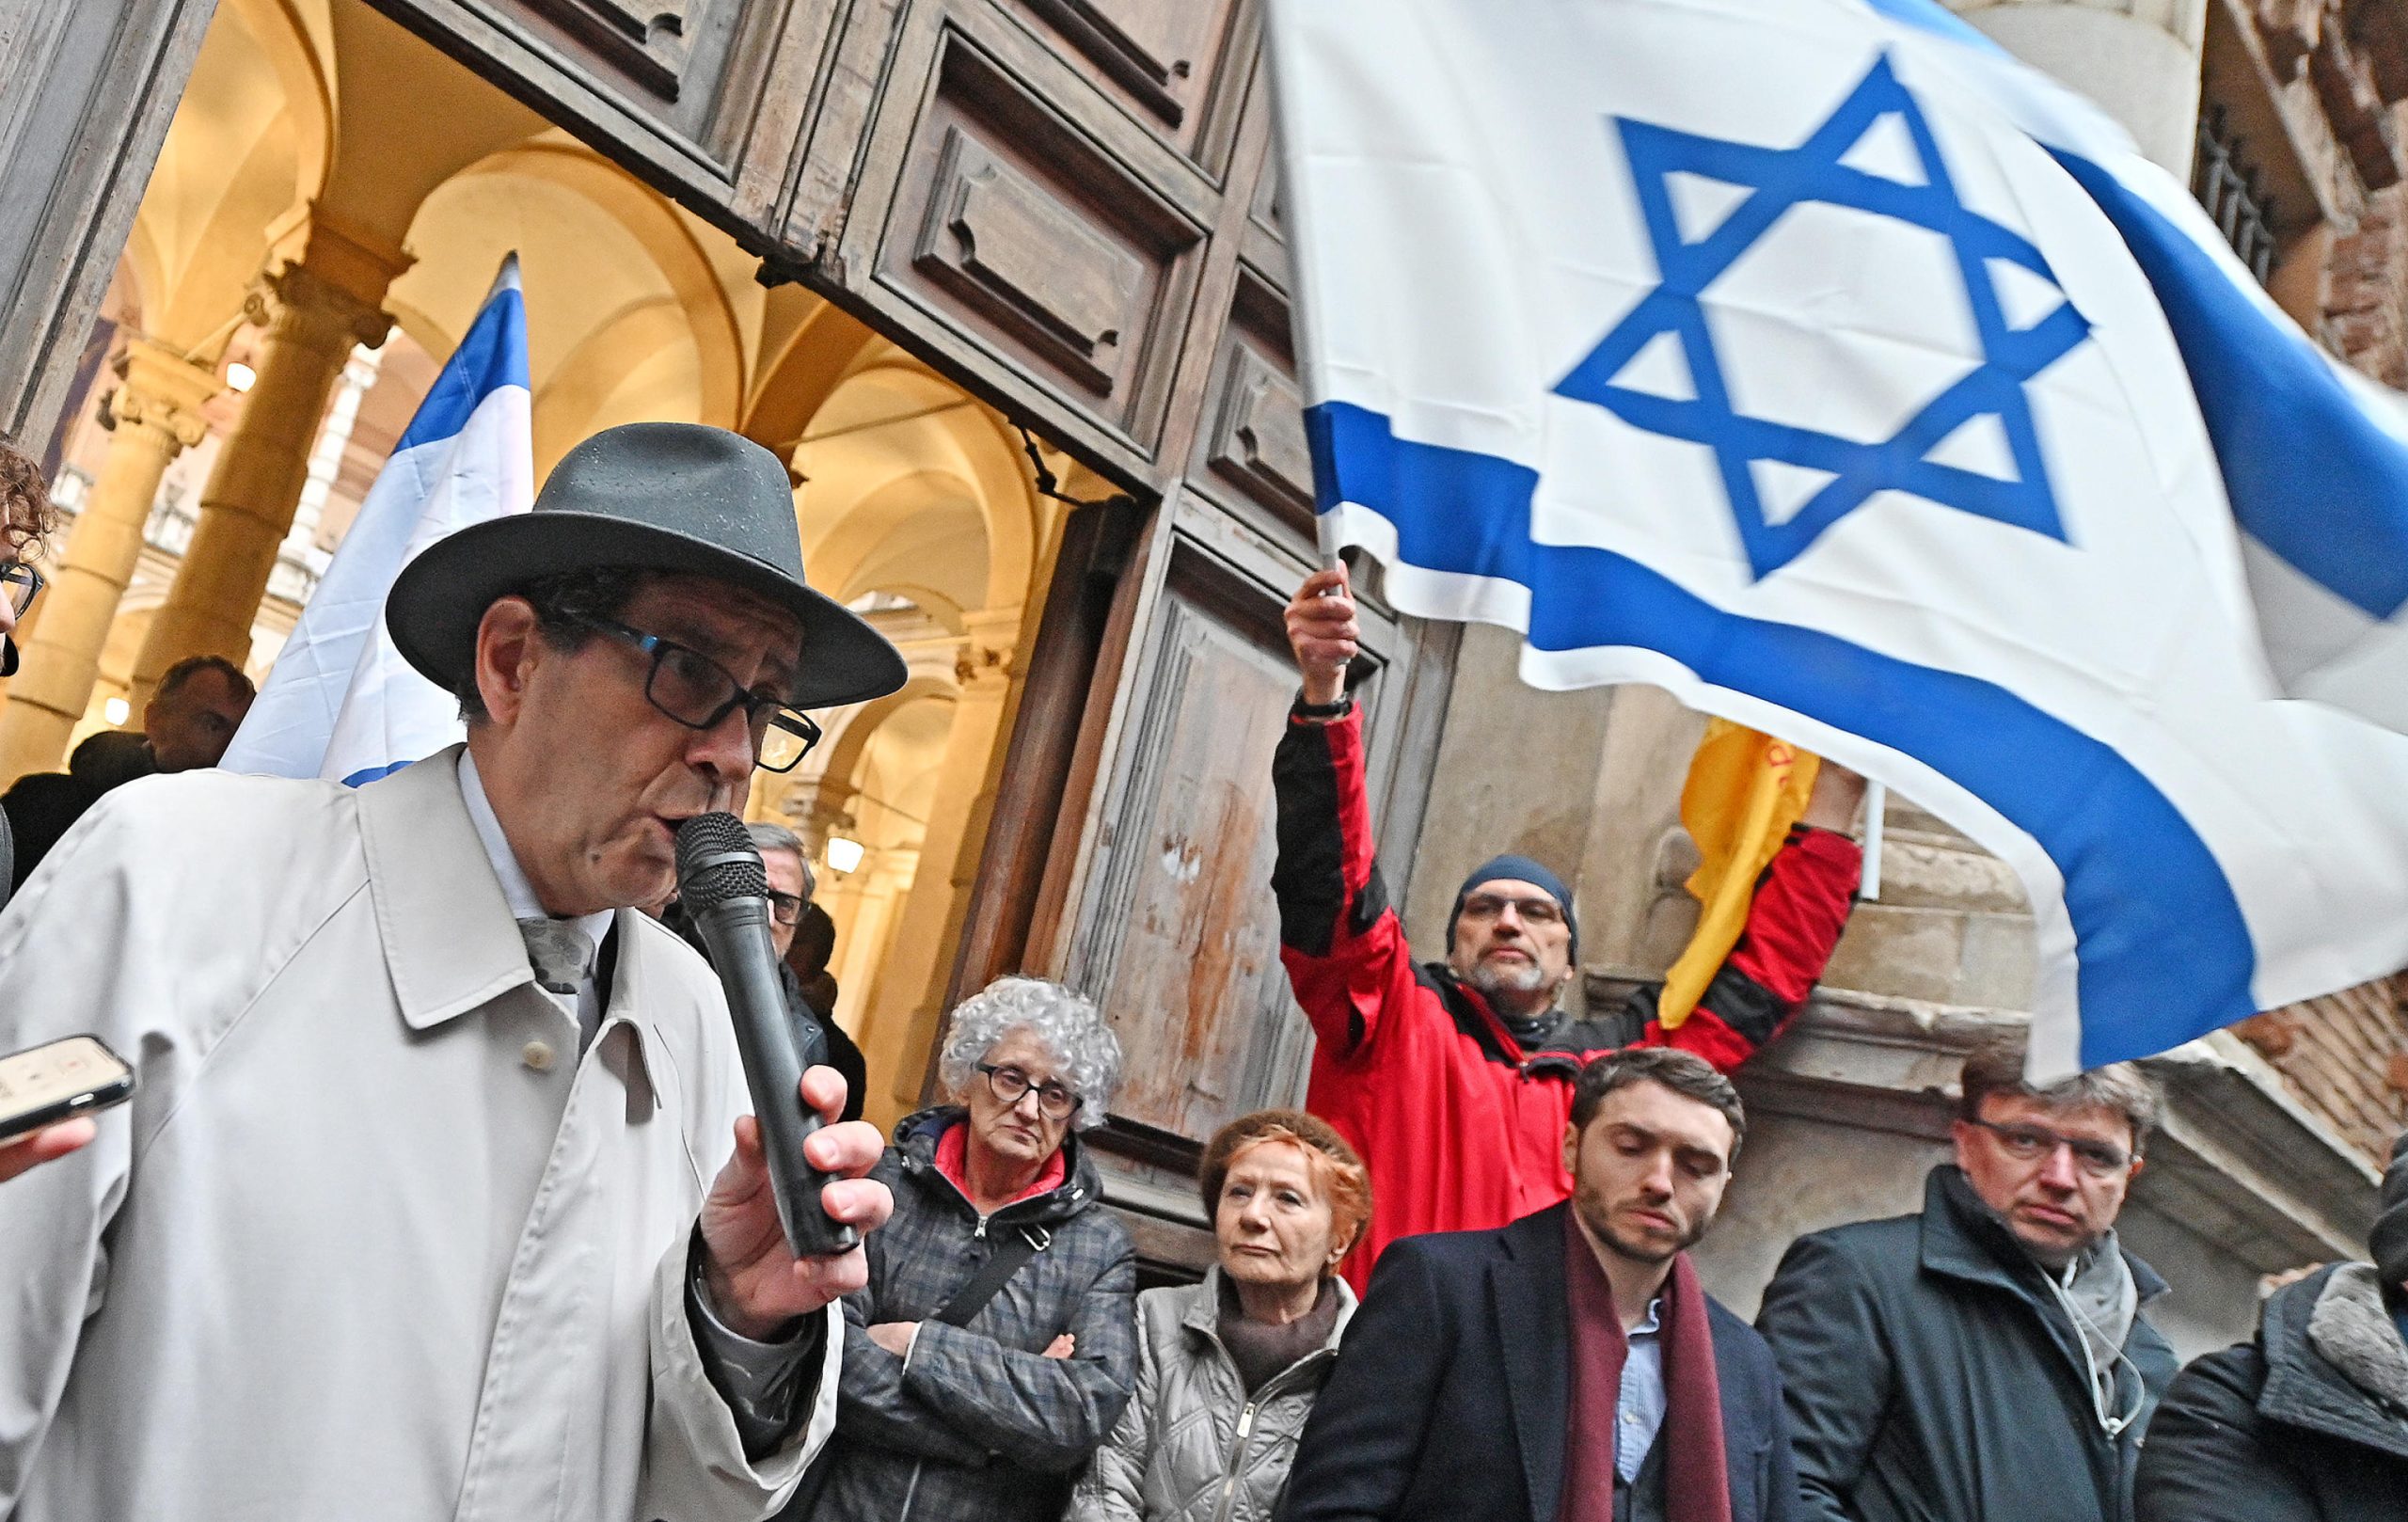 Presidio della comunità ebraica davanti al rettorato dell'Università di Torino